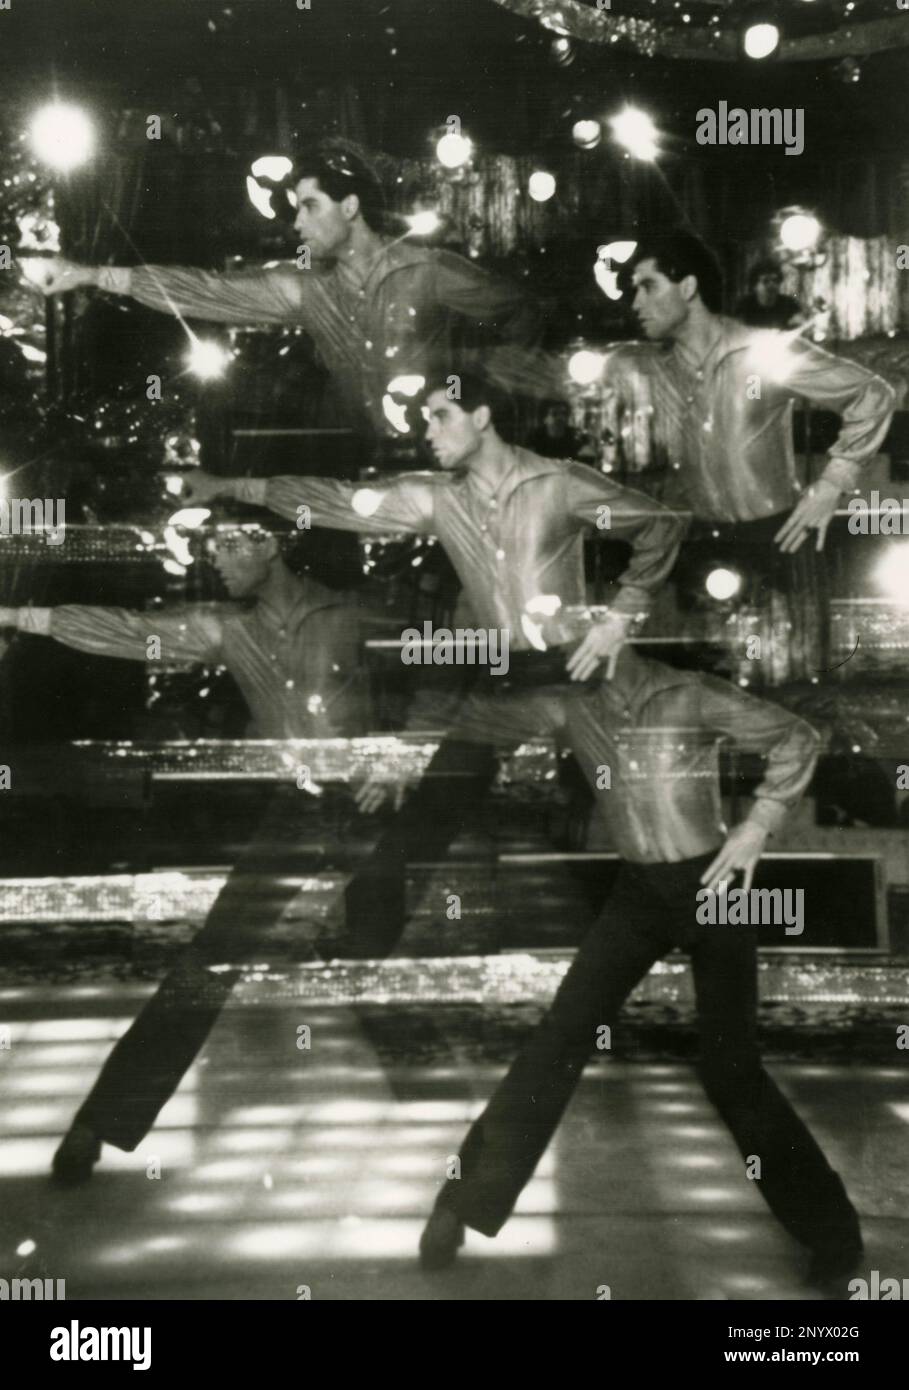 L'acteur américain John Travolta dans le film Saturday Night Fever, USA 1977 Banque D'Images